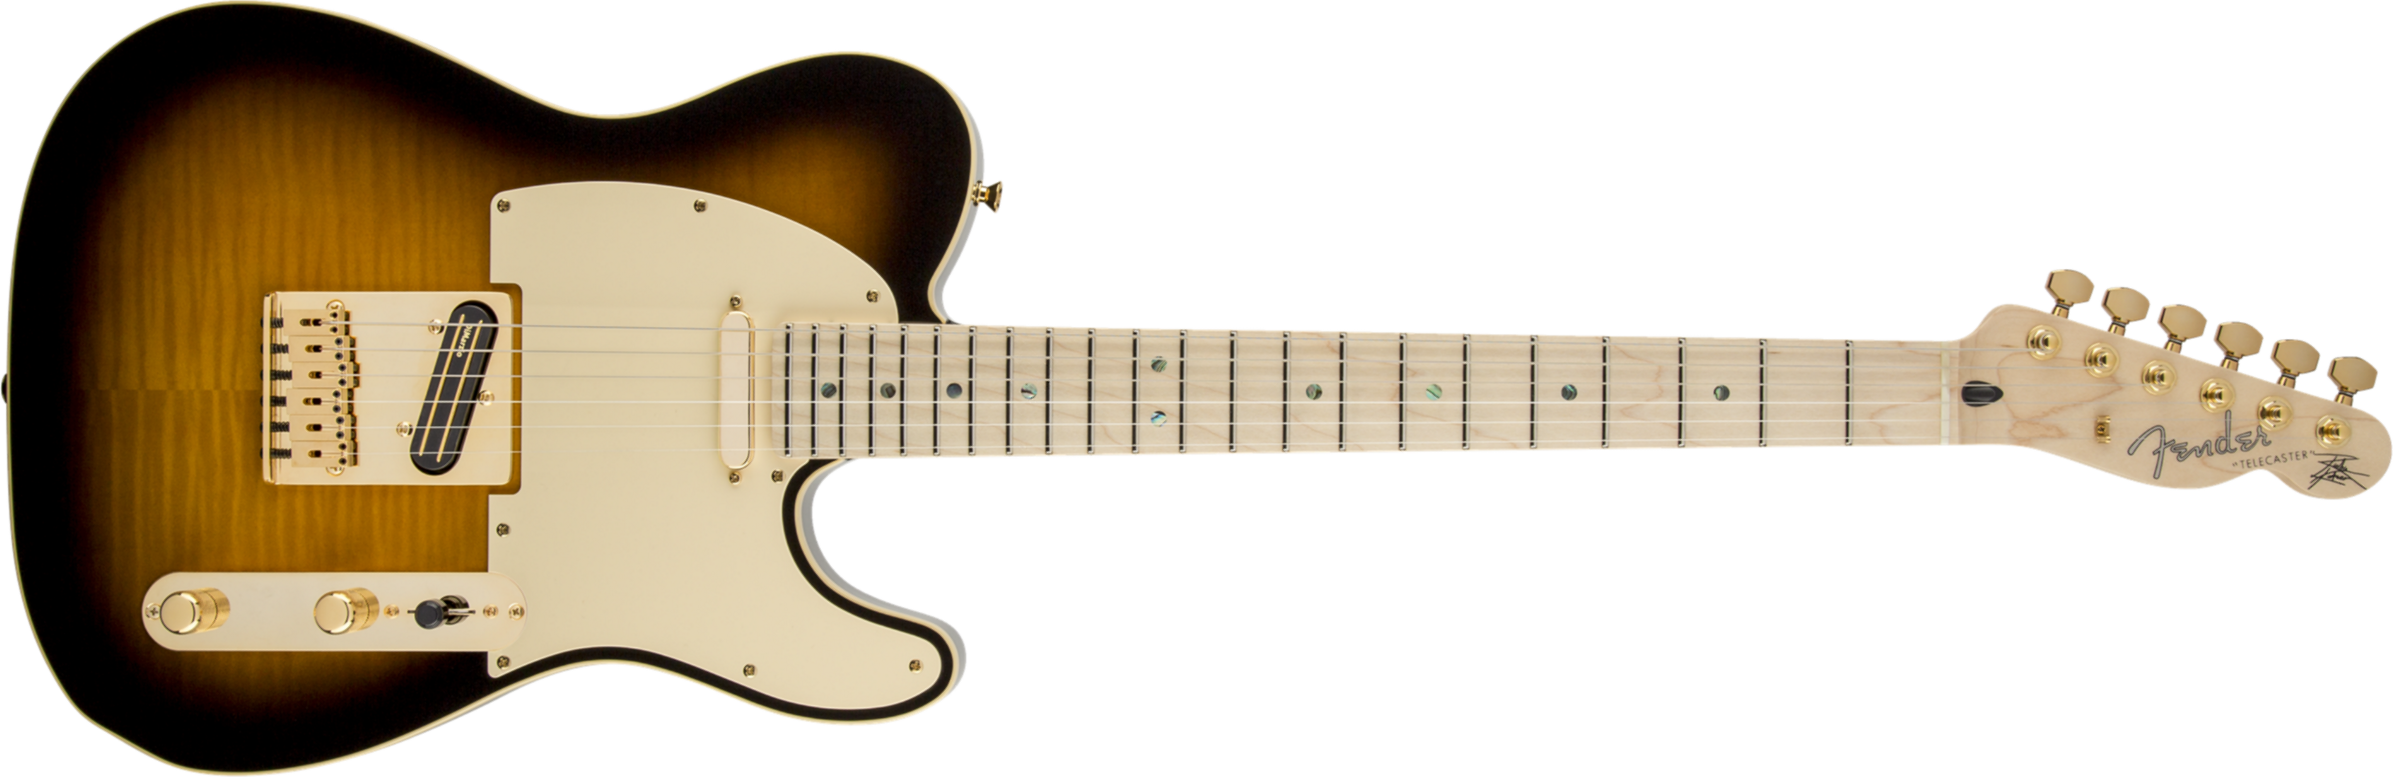 Fender Telecaster Richie Kotzen (jap, Mn) - Brown Sunburst - Guitarra eléctrica con forma de tel - Main picture